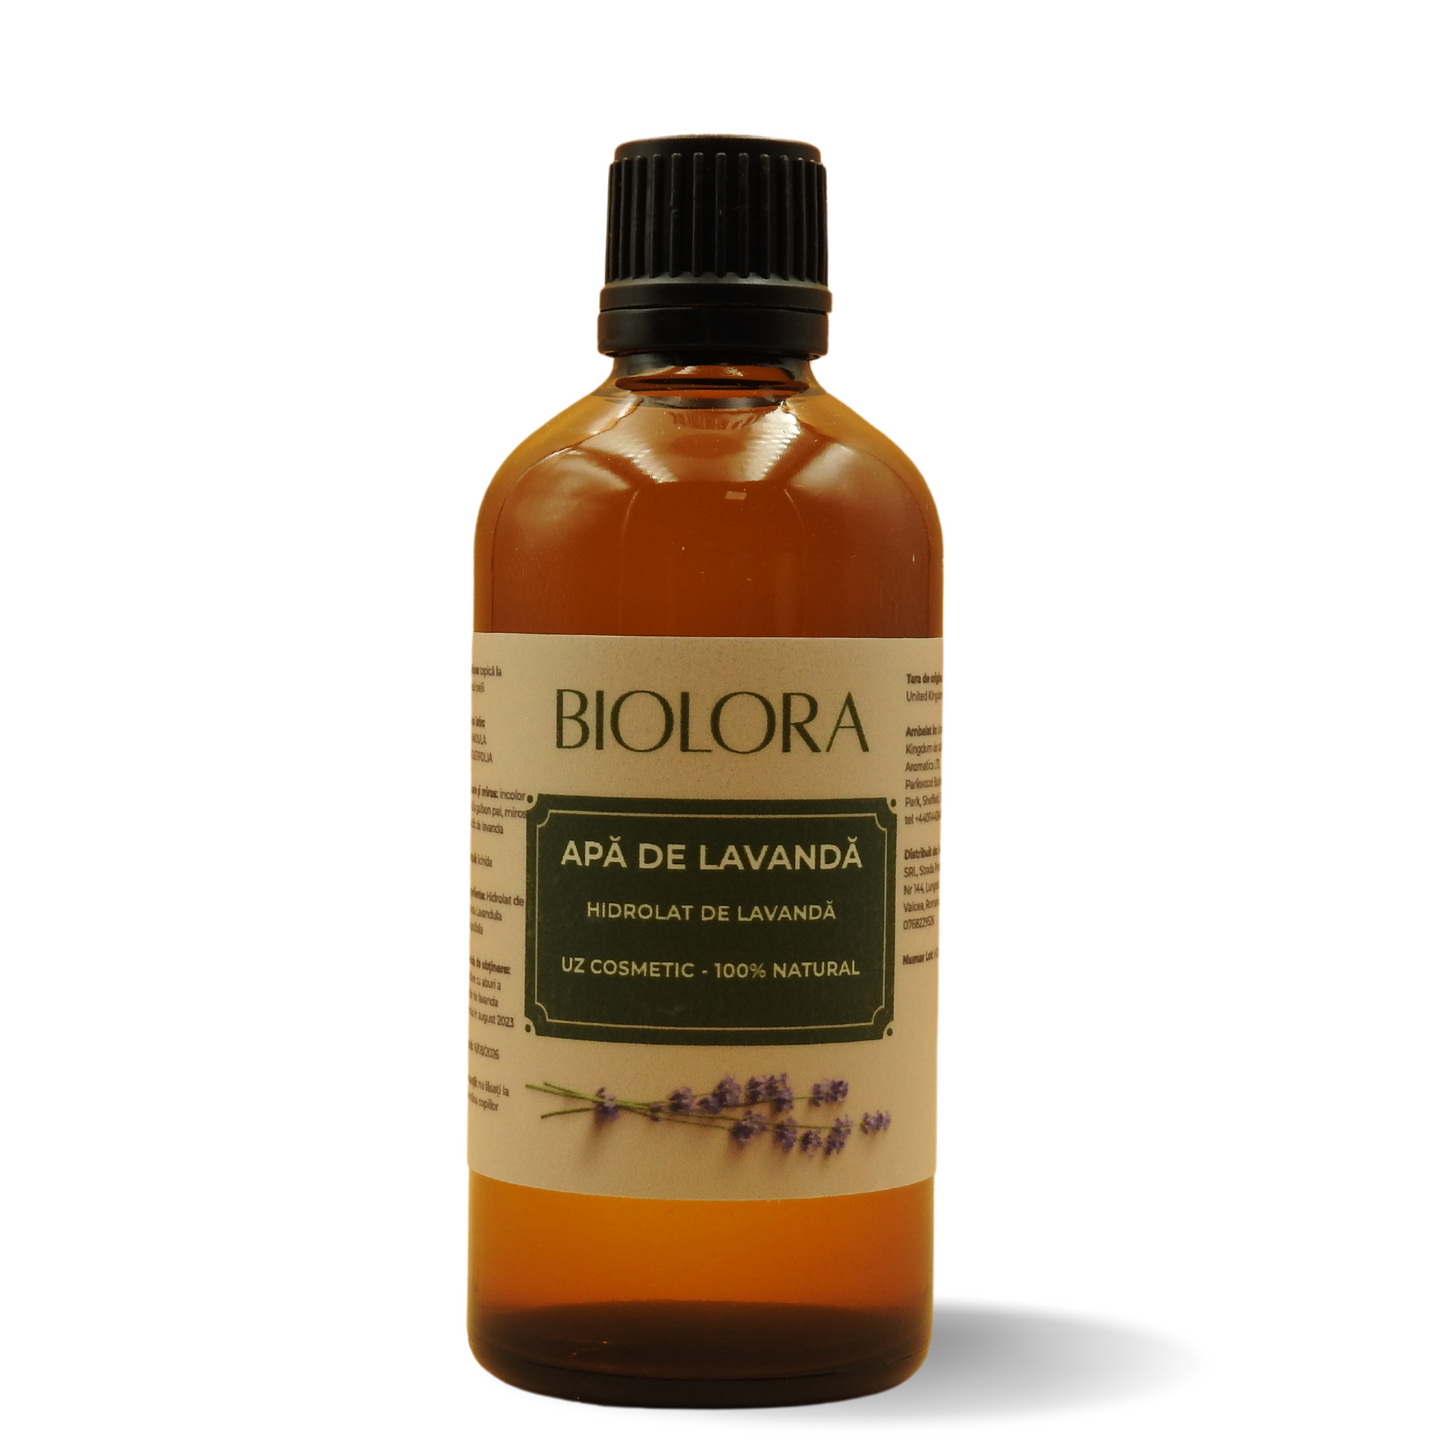 Apa de Lavanda/ Hidrolat de Lavanda Biolora, 100% natural, uz cosmetic, pentru ingrijirea pielii si a parului, 100 ml